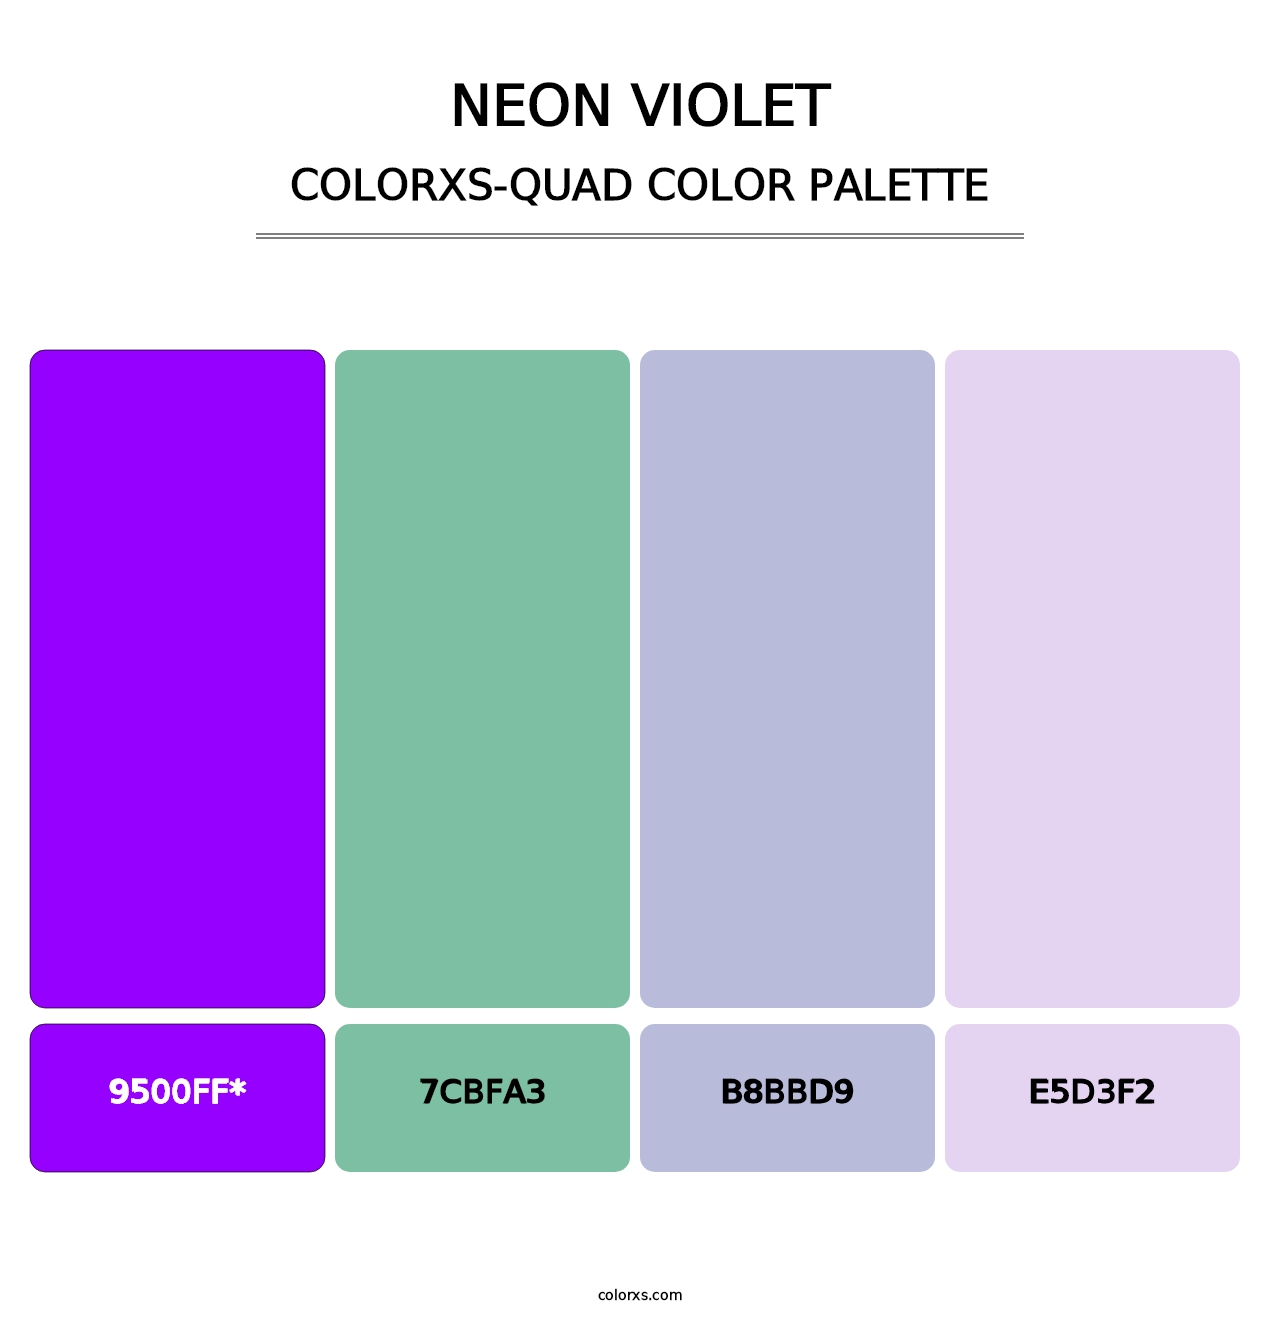 Neon Violet - Colorxs Quad Palette